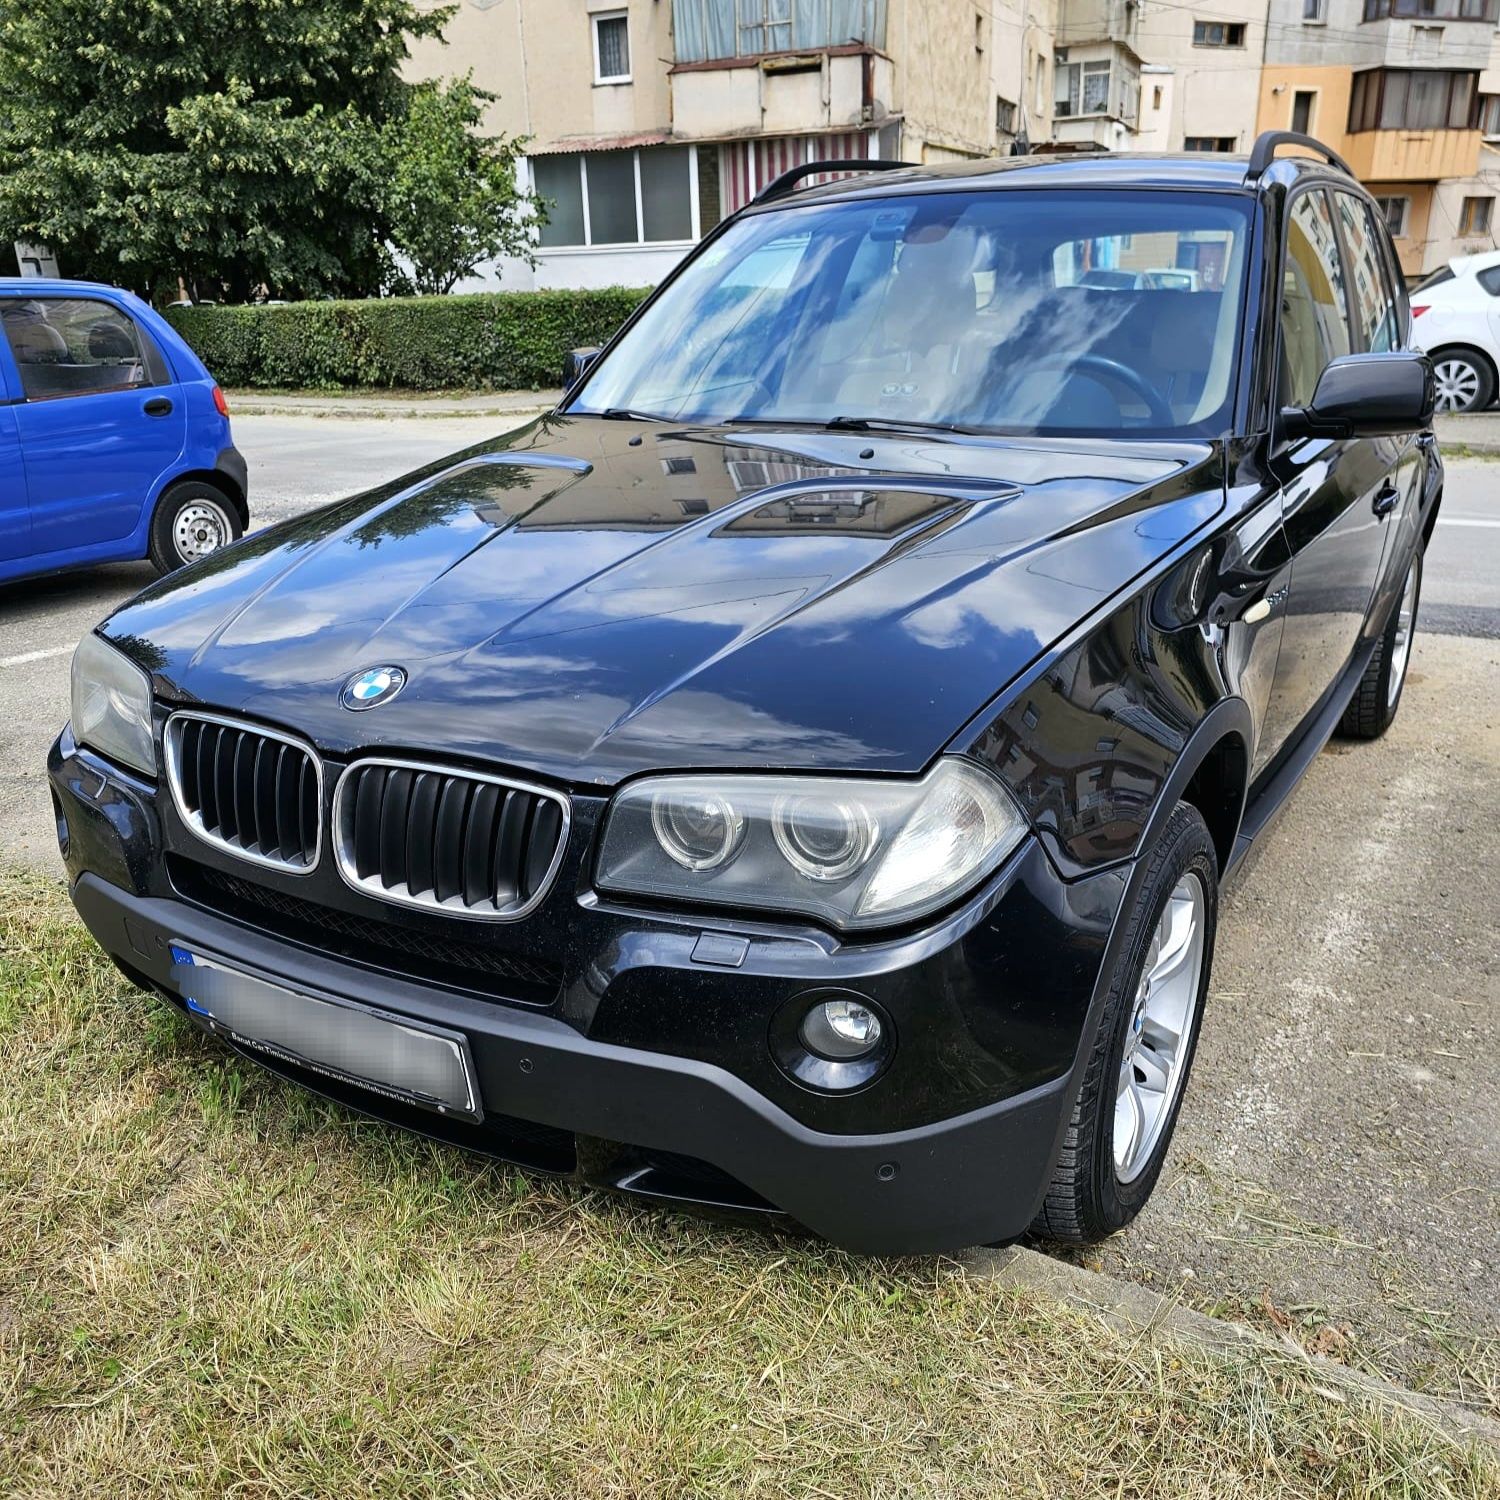 BMW X3 2.0D 2007 E83, 150 CP, 4x4, Manual, Euro 4